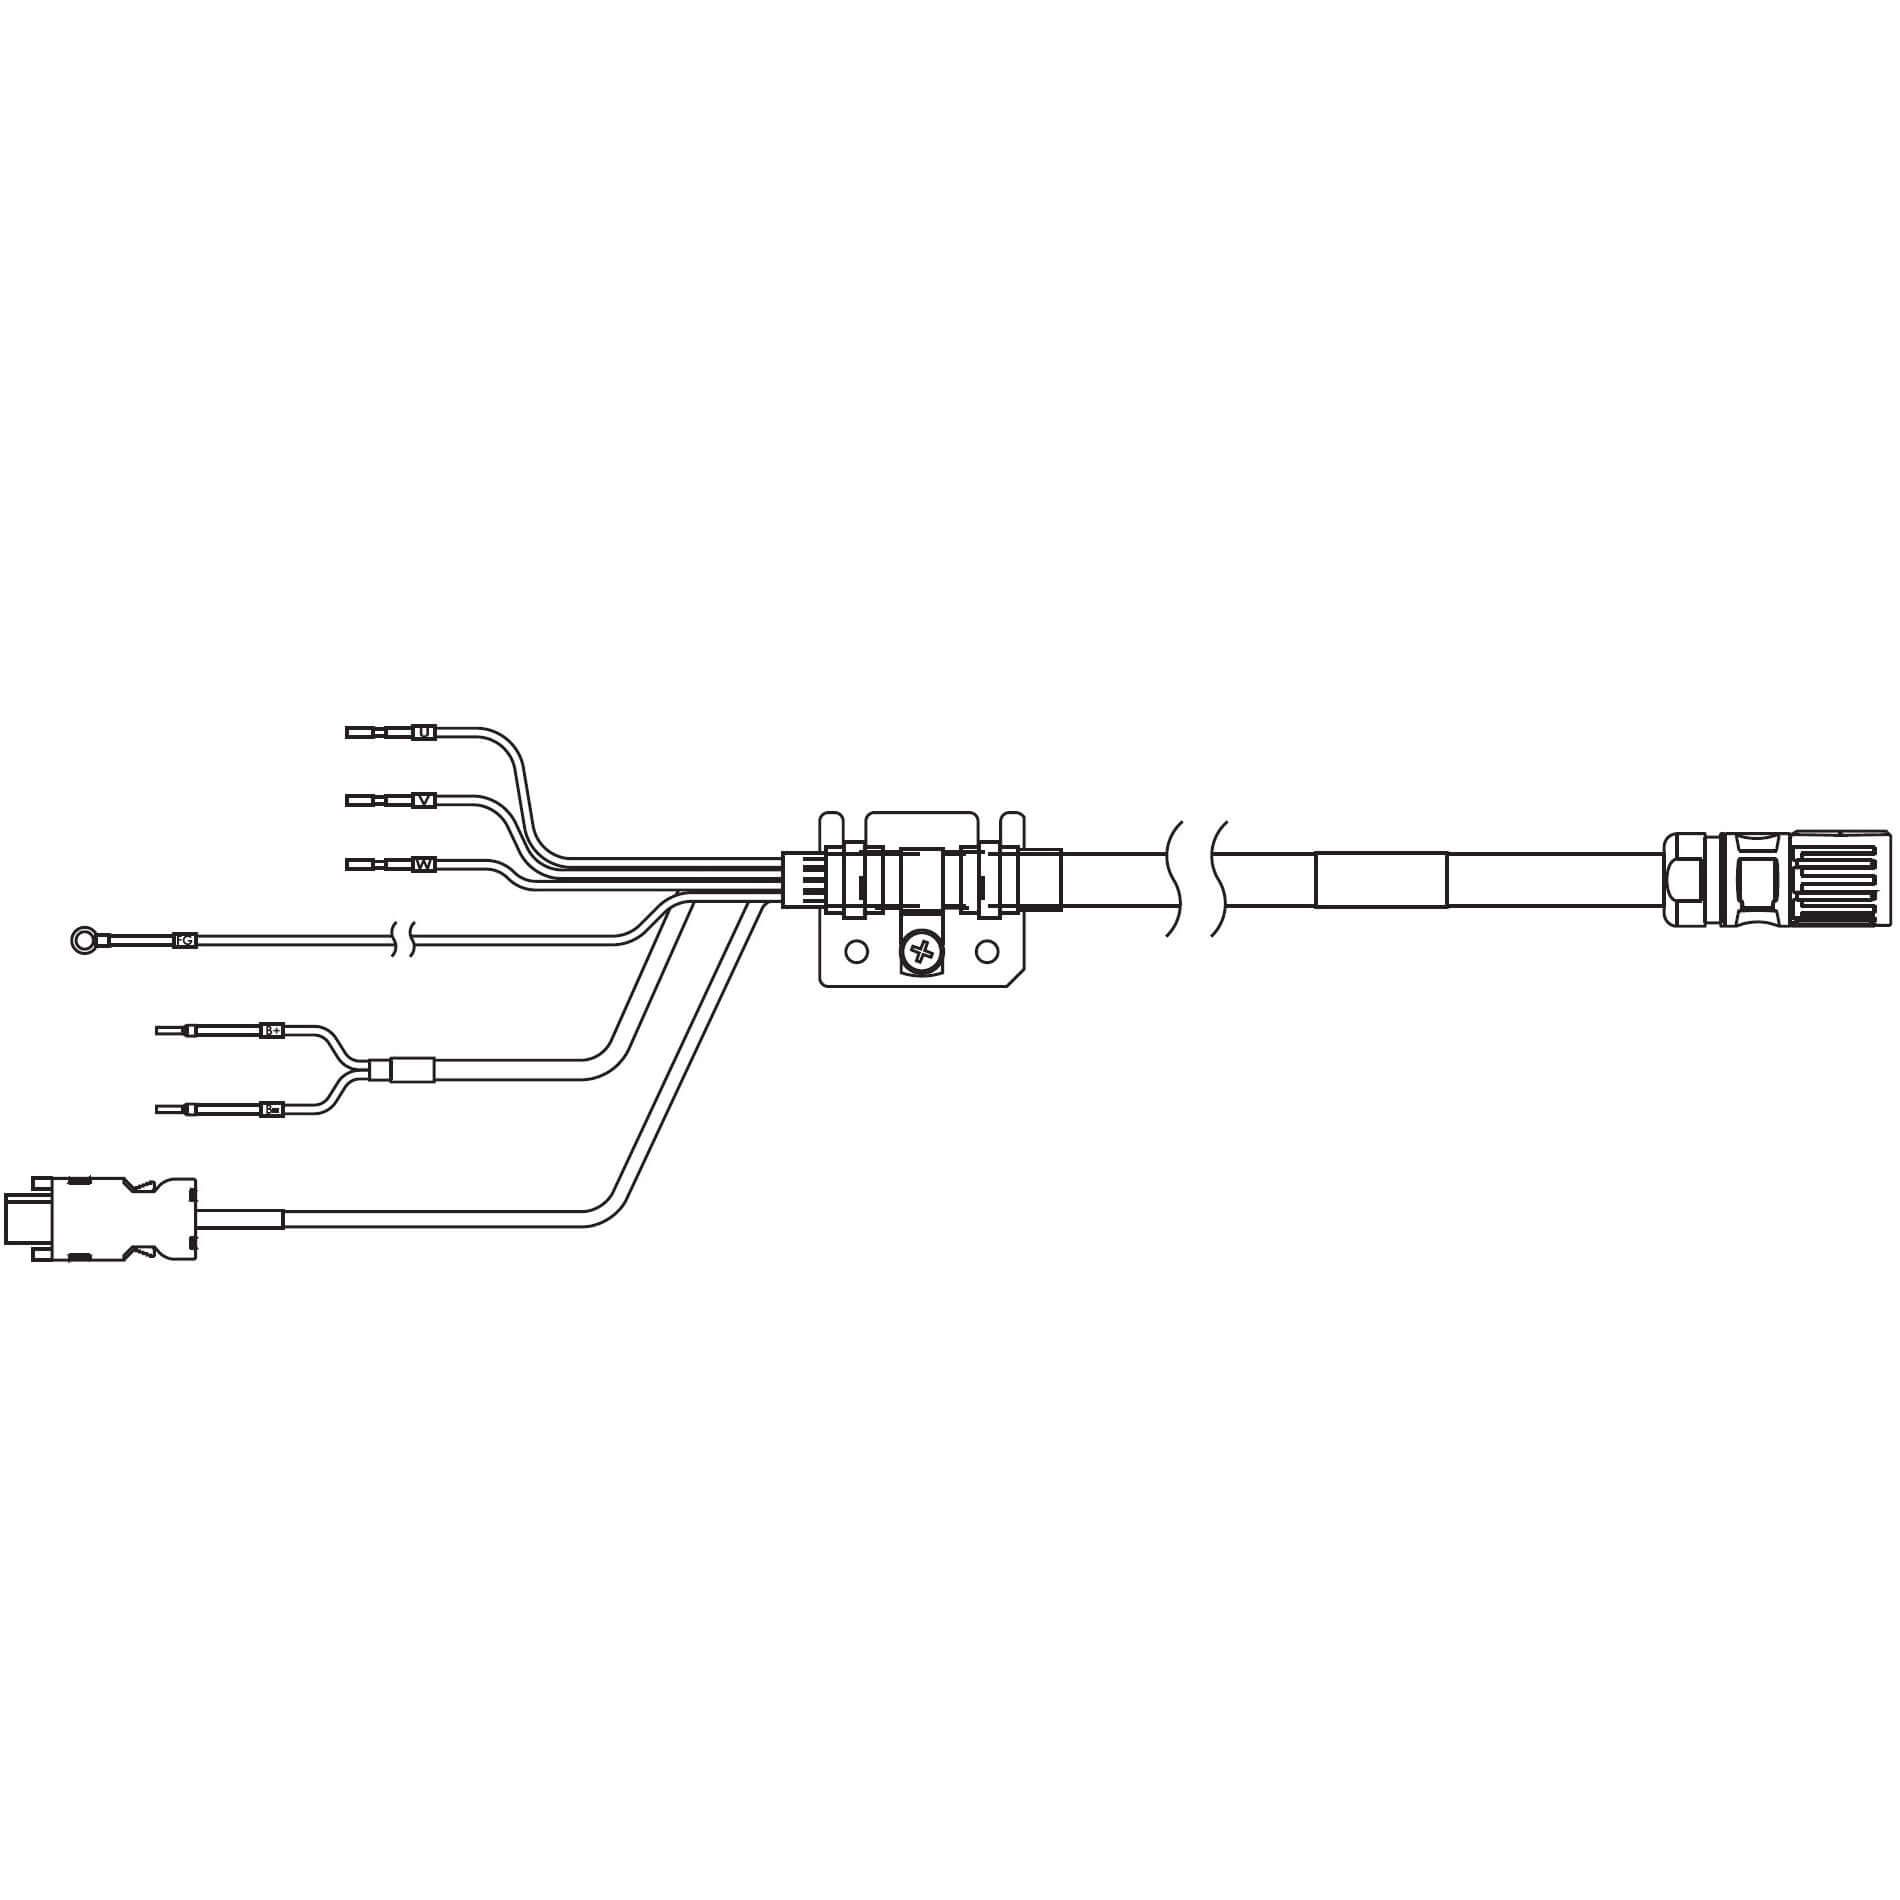 1S-Servomotor mit Safe Motion, Integrierte Kabel R88A-CX1A010SF